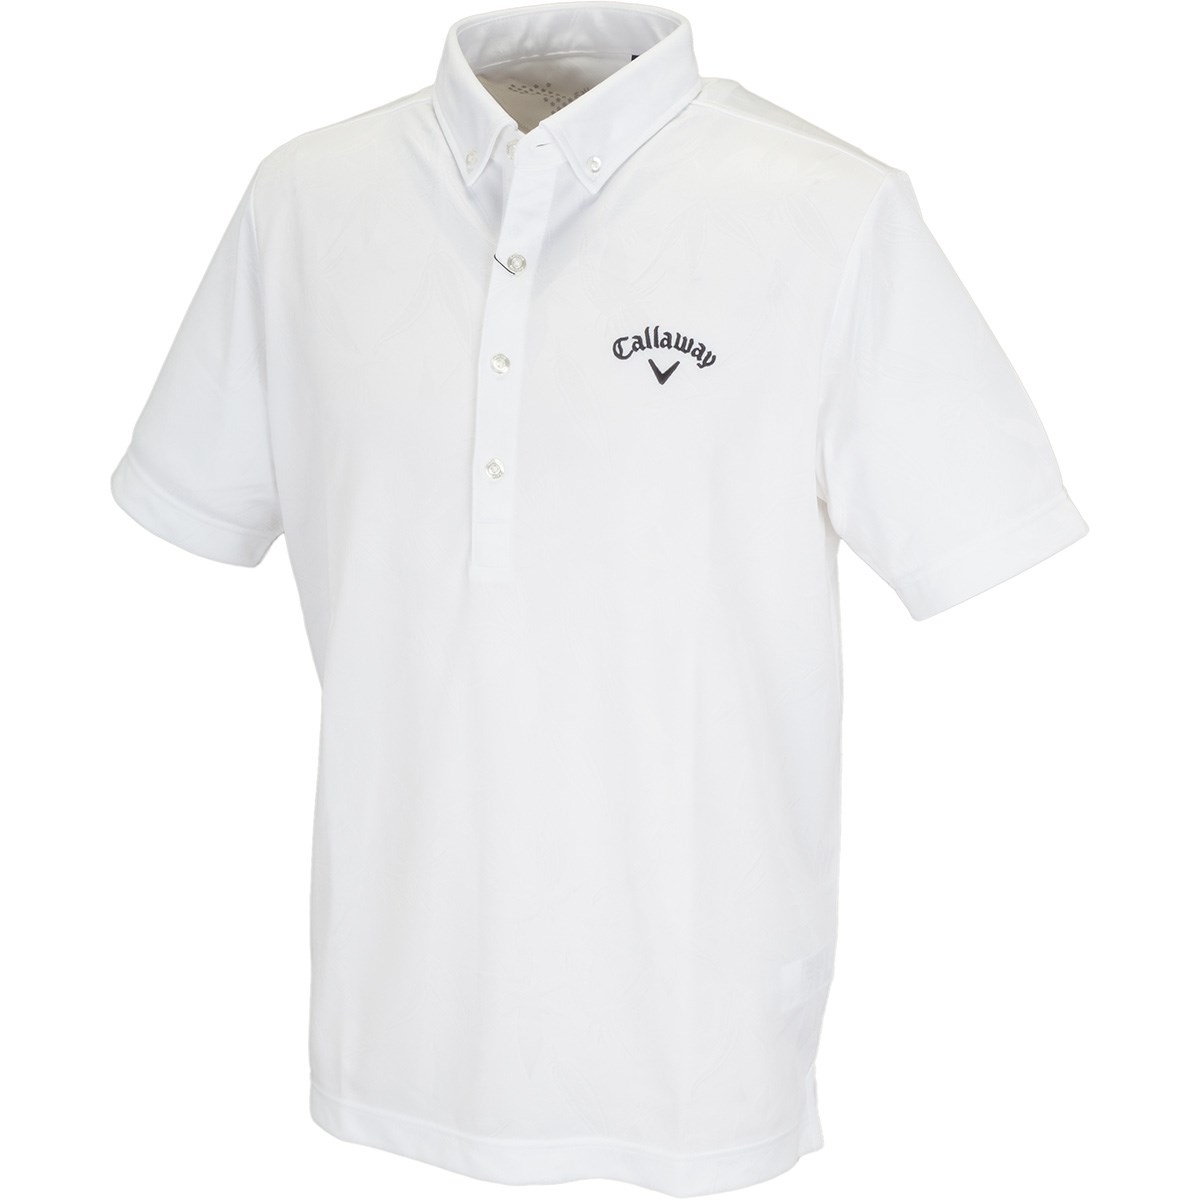 キャロウェイゴルフ(Callaway Golf) ボタンダウン クマザサ柄ジャカード カラー半袖ポロシャツ 